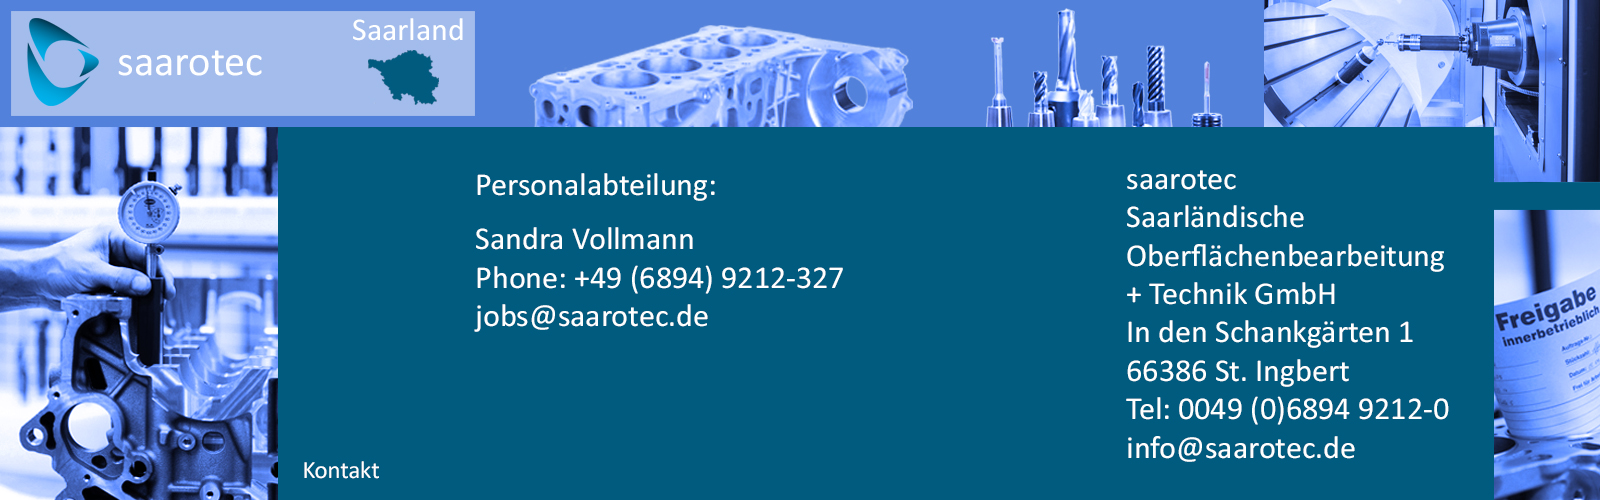 Personalabteilung saarotec Saarländische Oberflächenbearbeitung und Technik GmbH